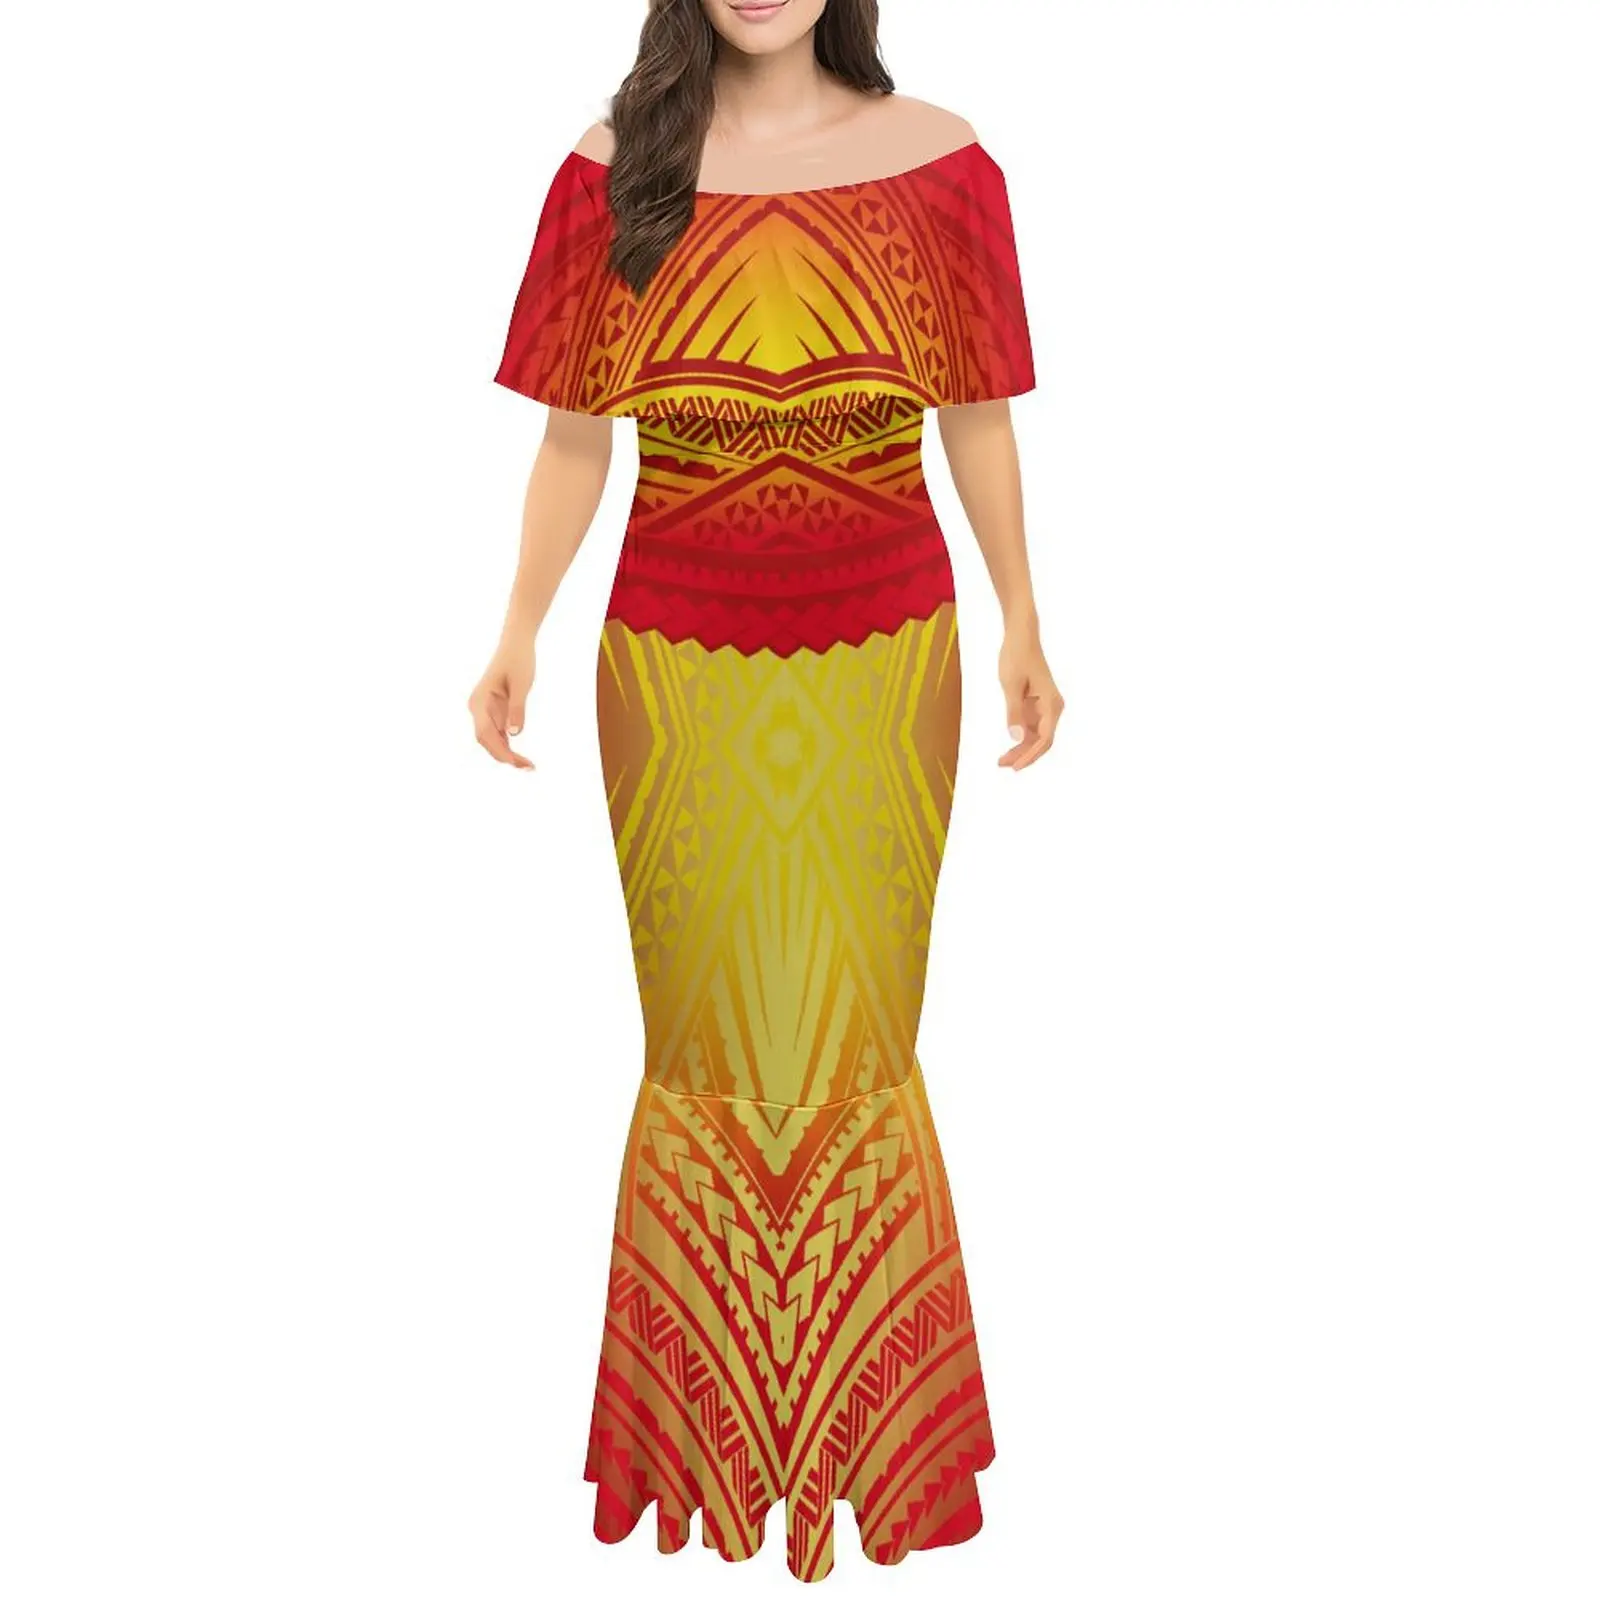 Női váll nélküli ruha polinéz törzs által tervezett parti női fishtail ruha elegáns földig érő ruha Kép 3